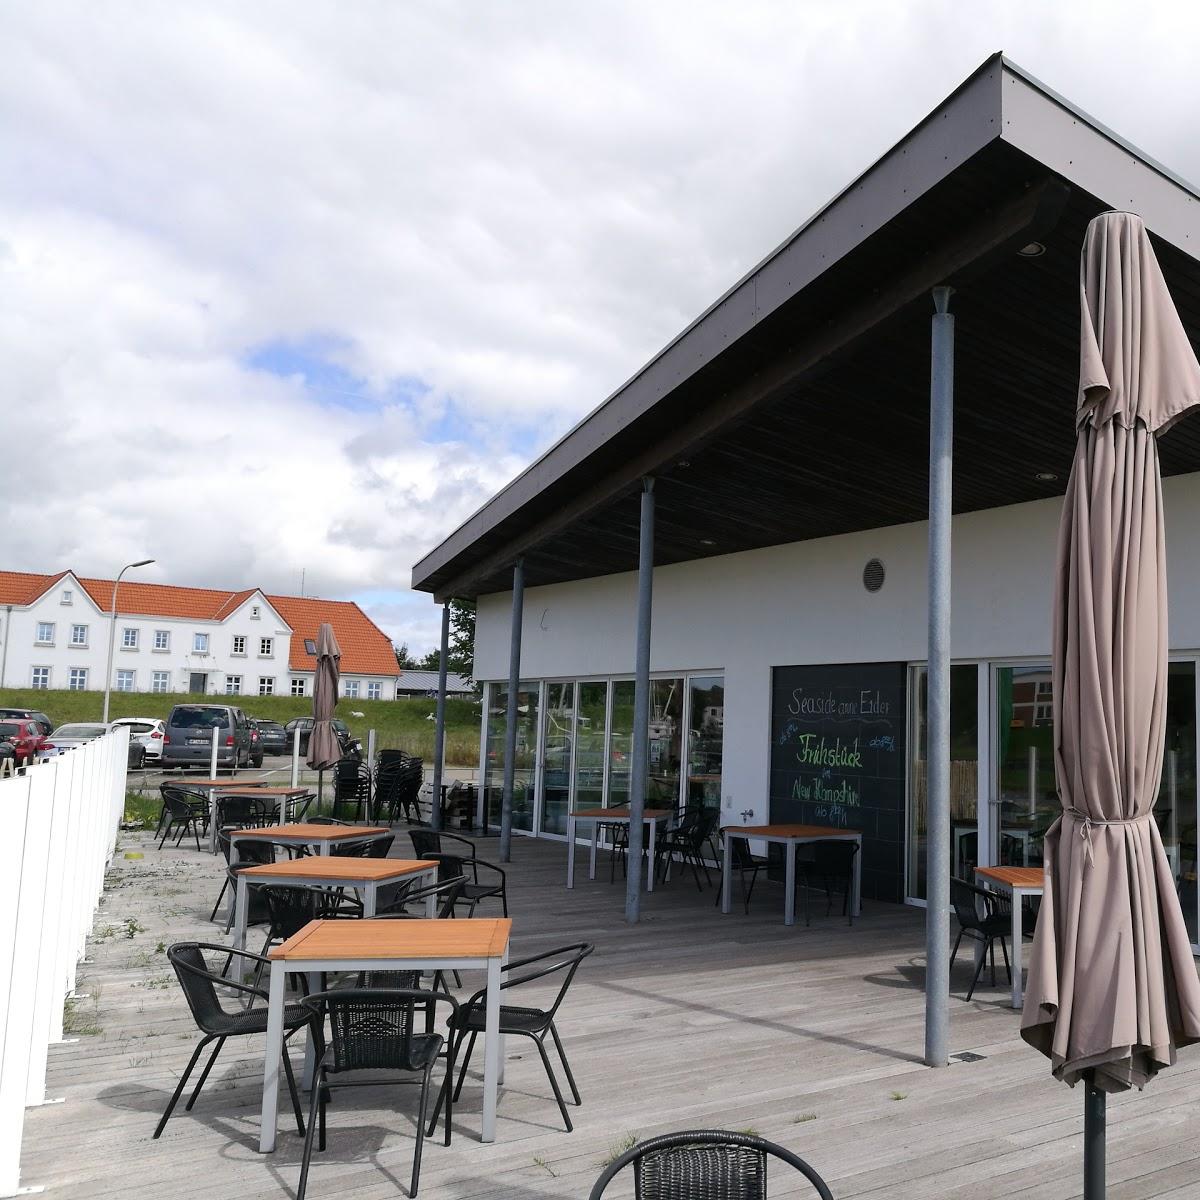 Restaurant "Seaside anne Eider" in Tönning